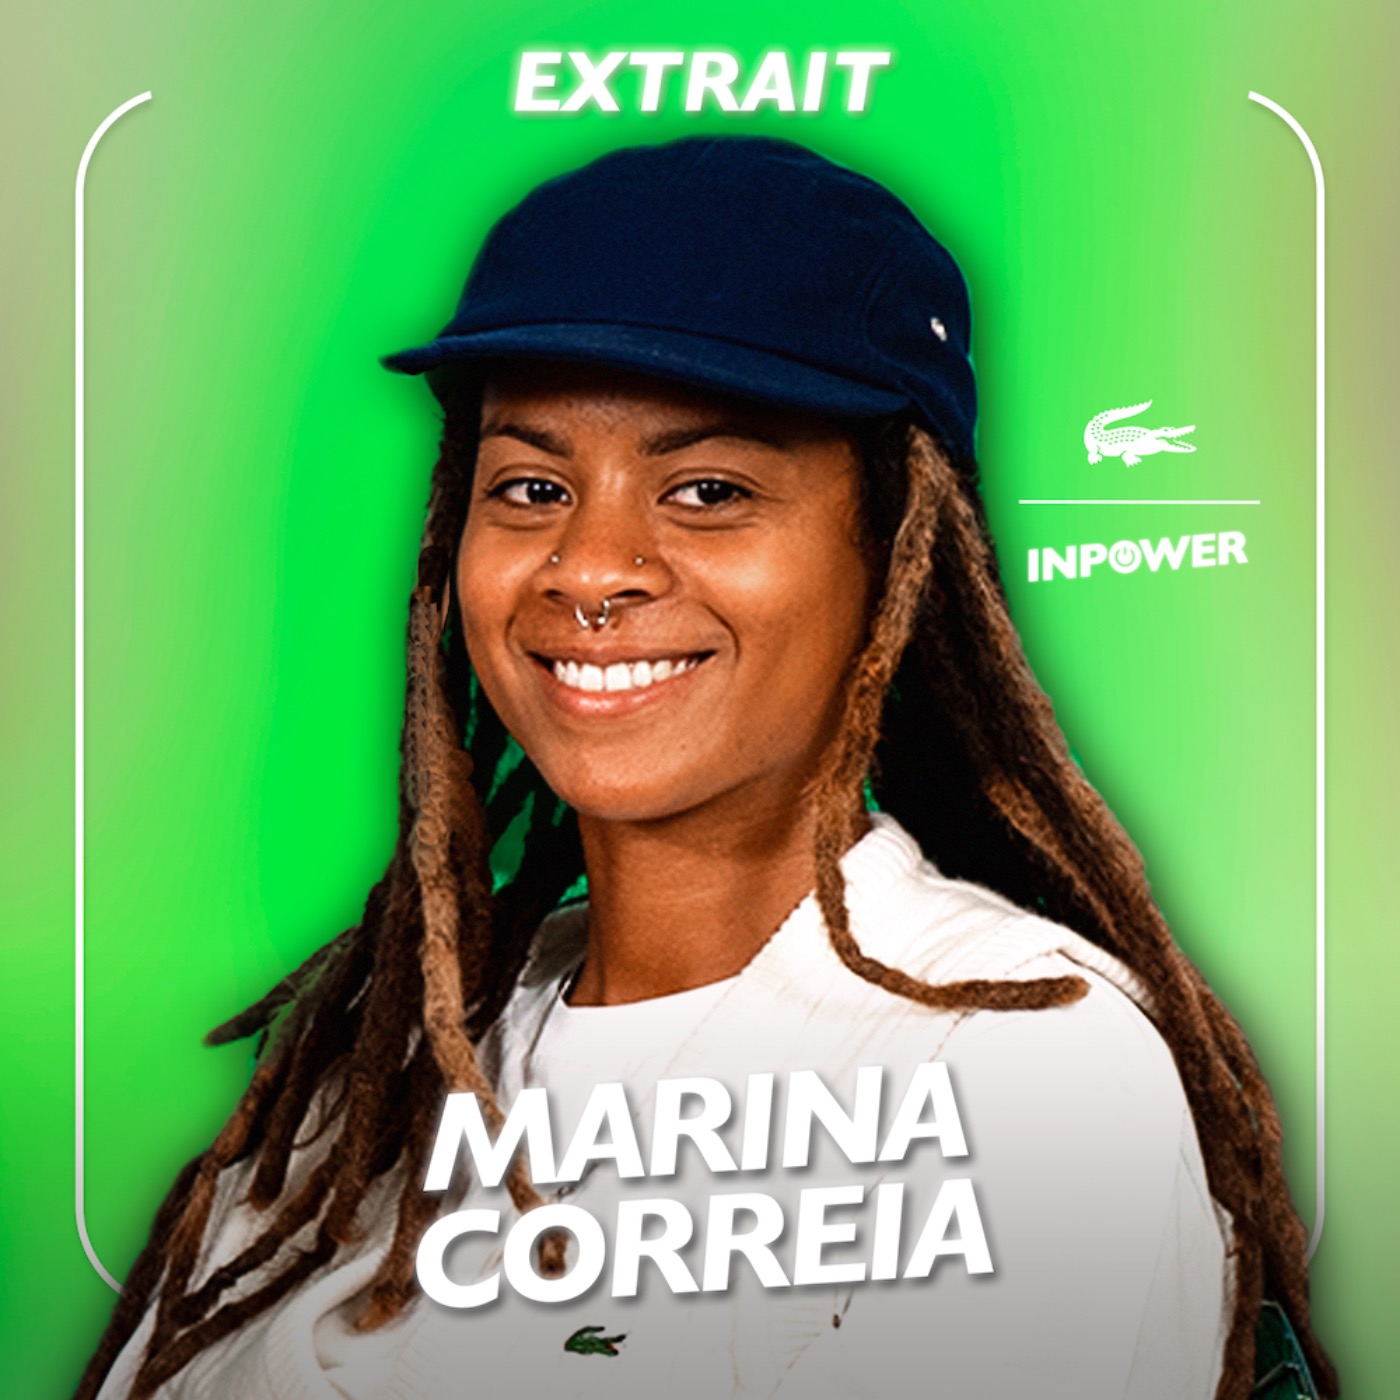 Trouver sa place en tant que championne : Marina Correia, championne du monde de longboard, se livre